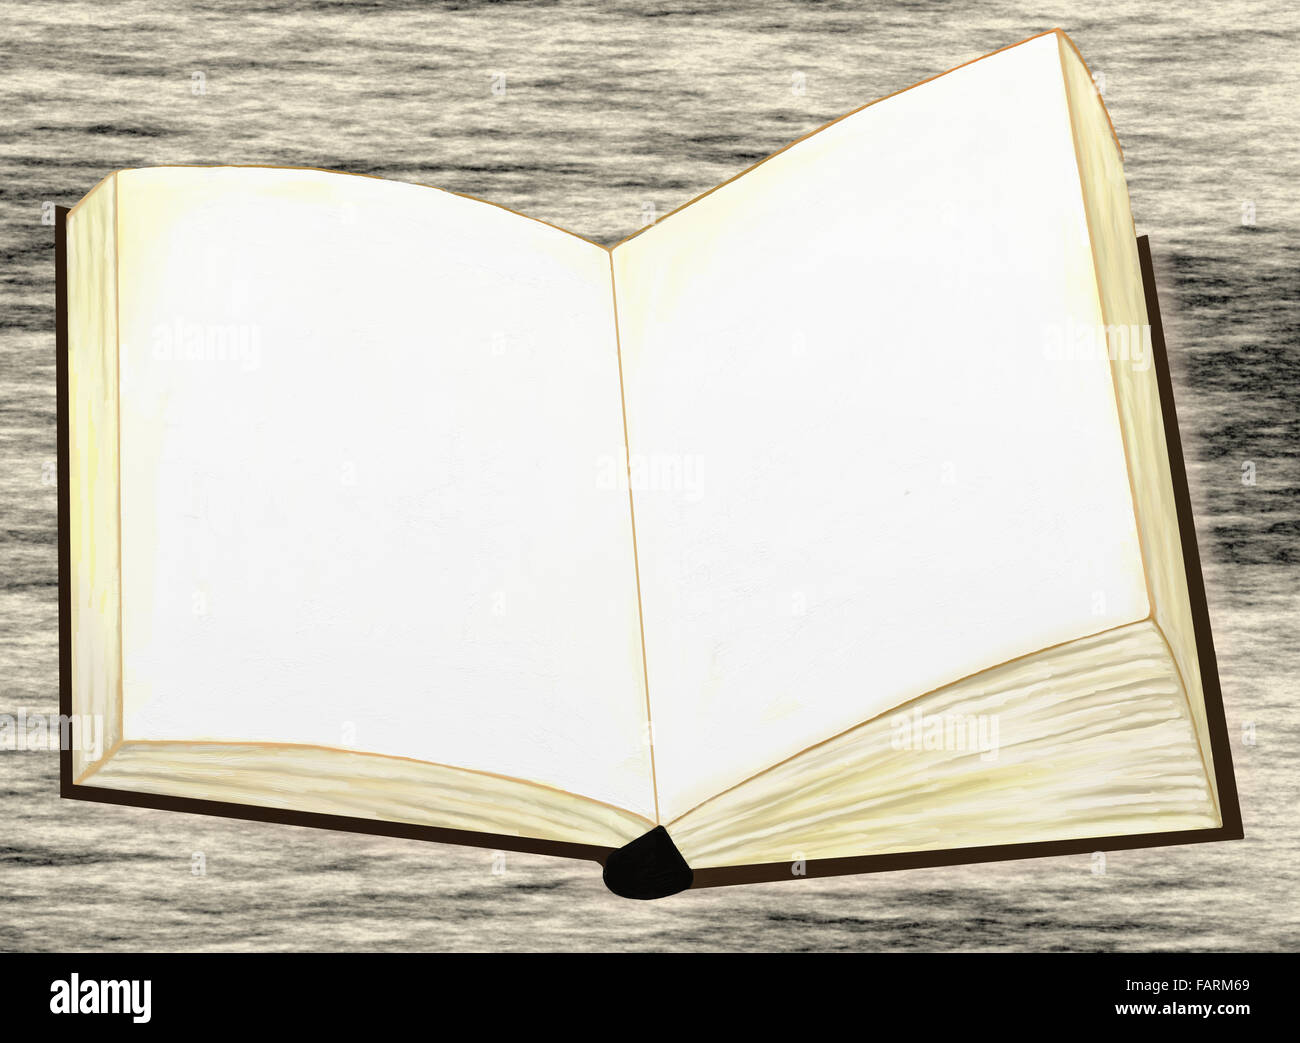 Leere Buchseiten auf grauen Tisch geöffnet Stockfotografie - Alamy